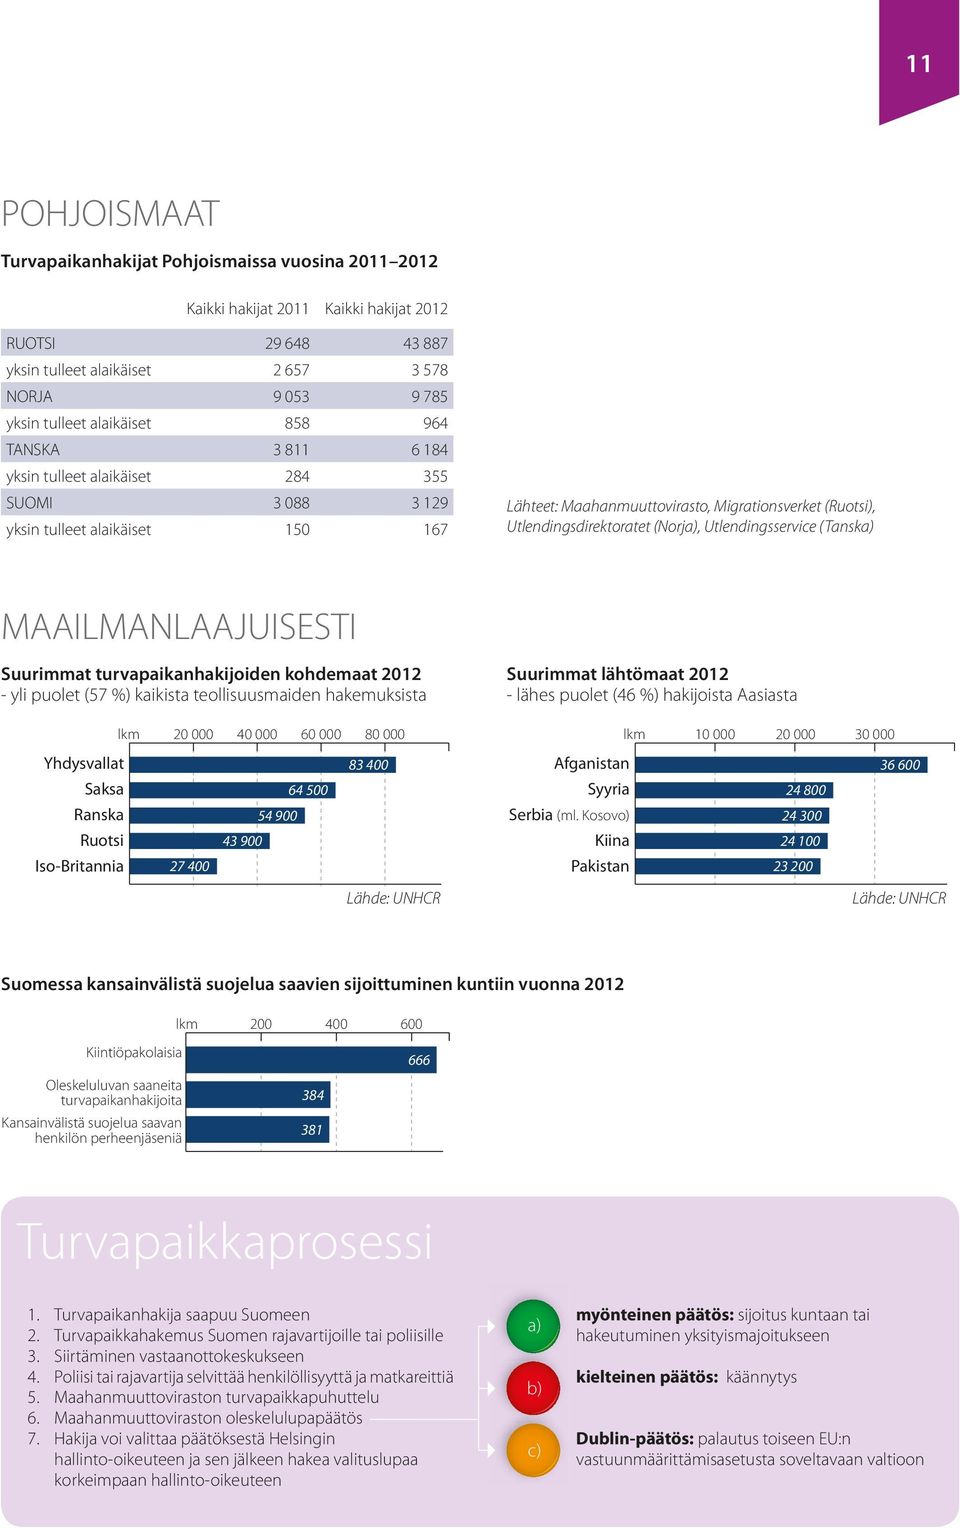 Utlendingsdirektoratet (Norja), Utlendingsservice (Tanska) MAAILMANLAAJUISESTI Suurimmat turvapaikanhakijoiden kohdemaat 2012 - yli puolet (57 %) kaikista teollisuusmaiden hakemuksista Yhdysvallat